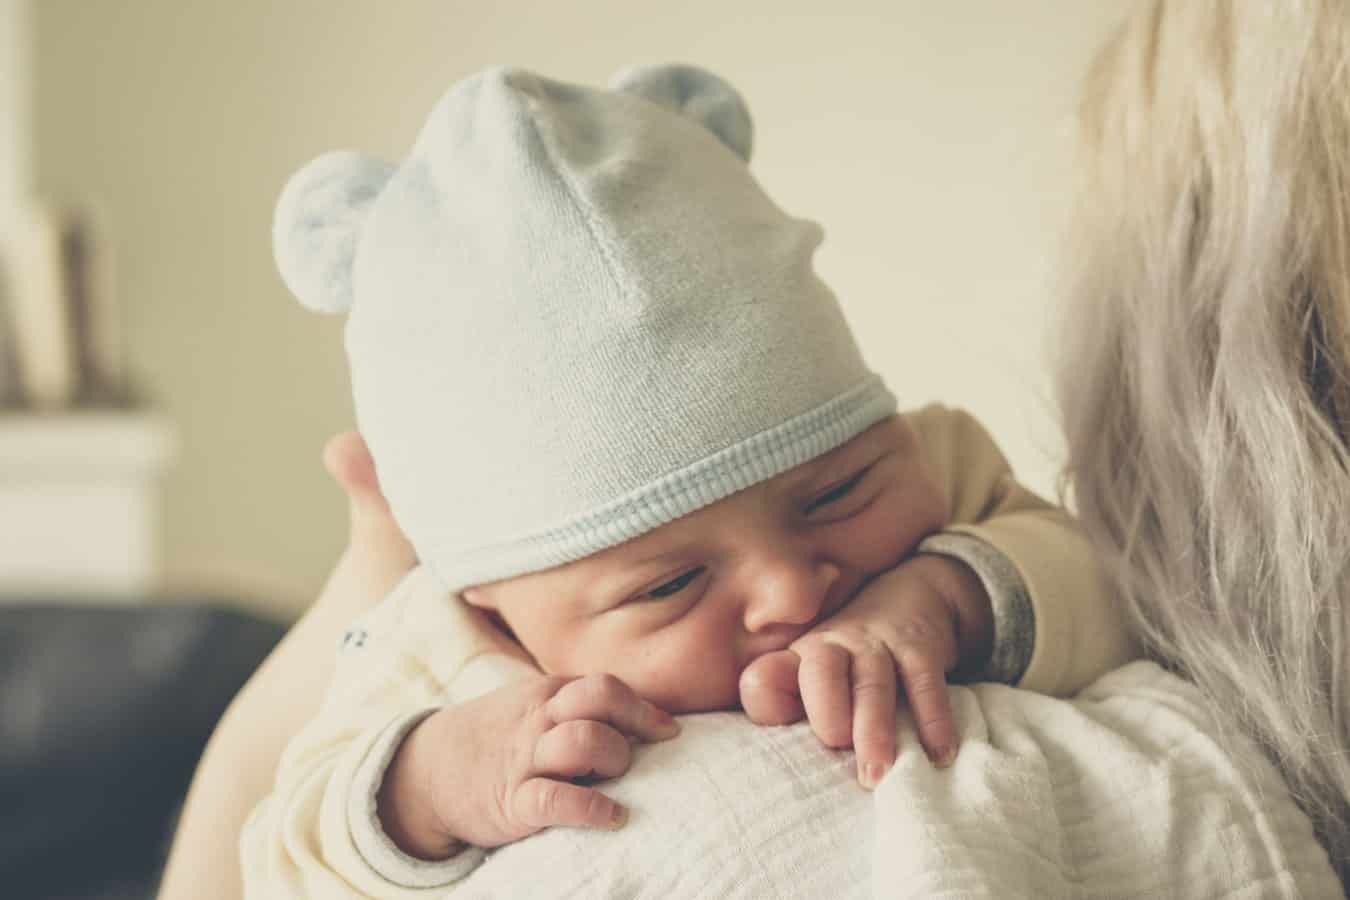 Zatwardzenie u niemowlaka – jak sobie z nim radzić?